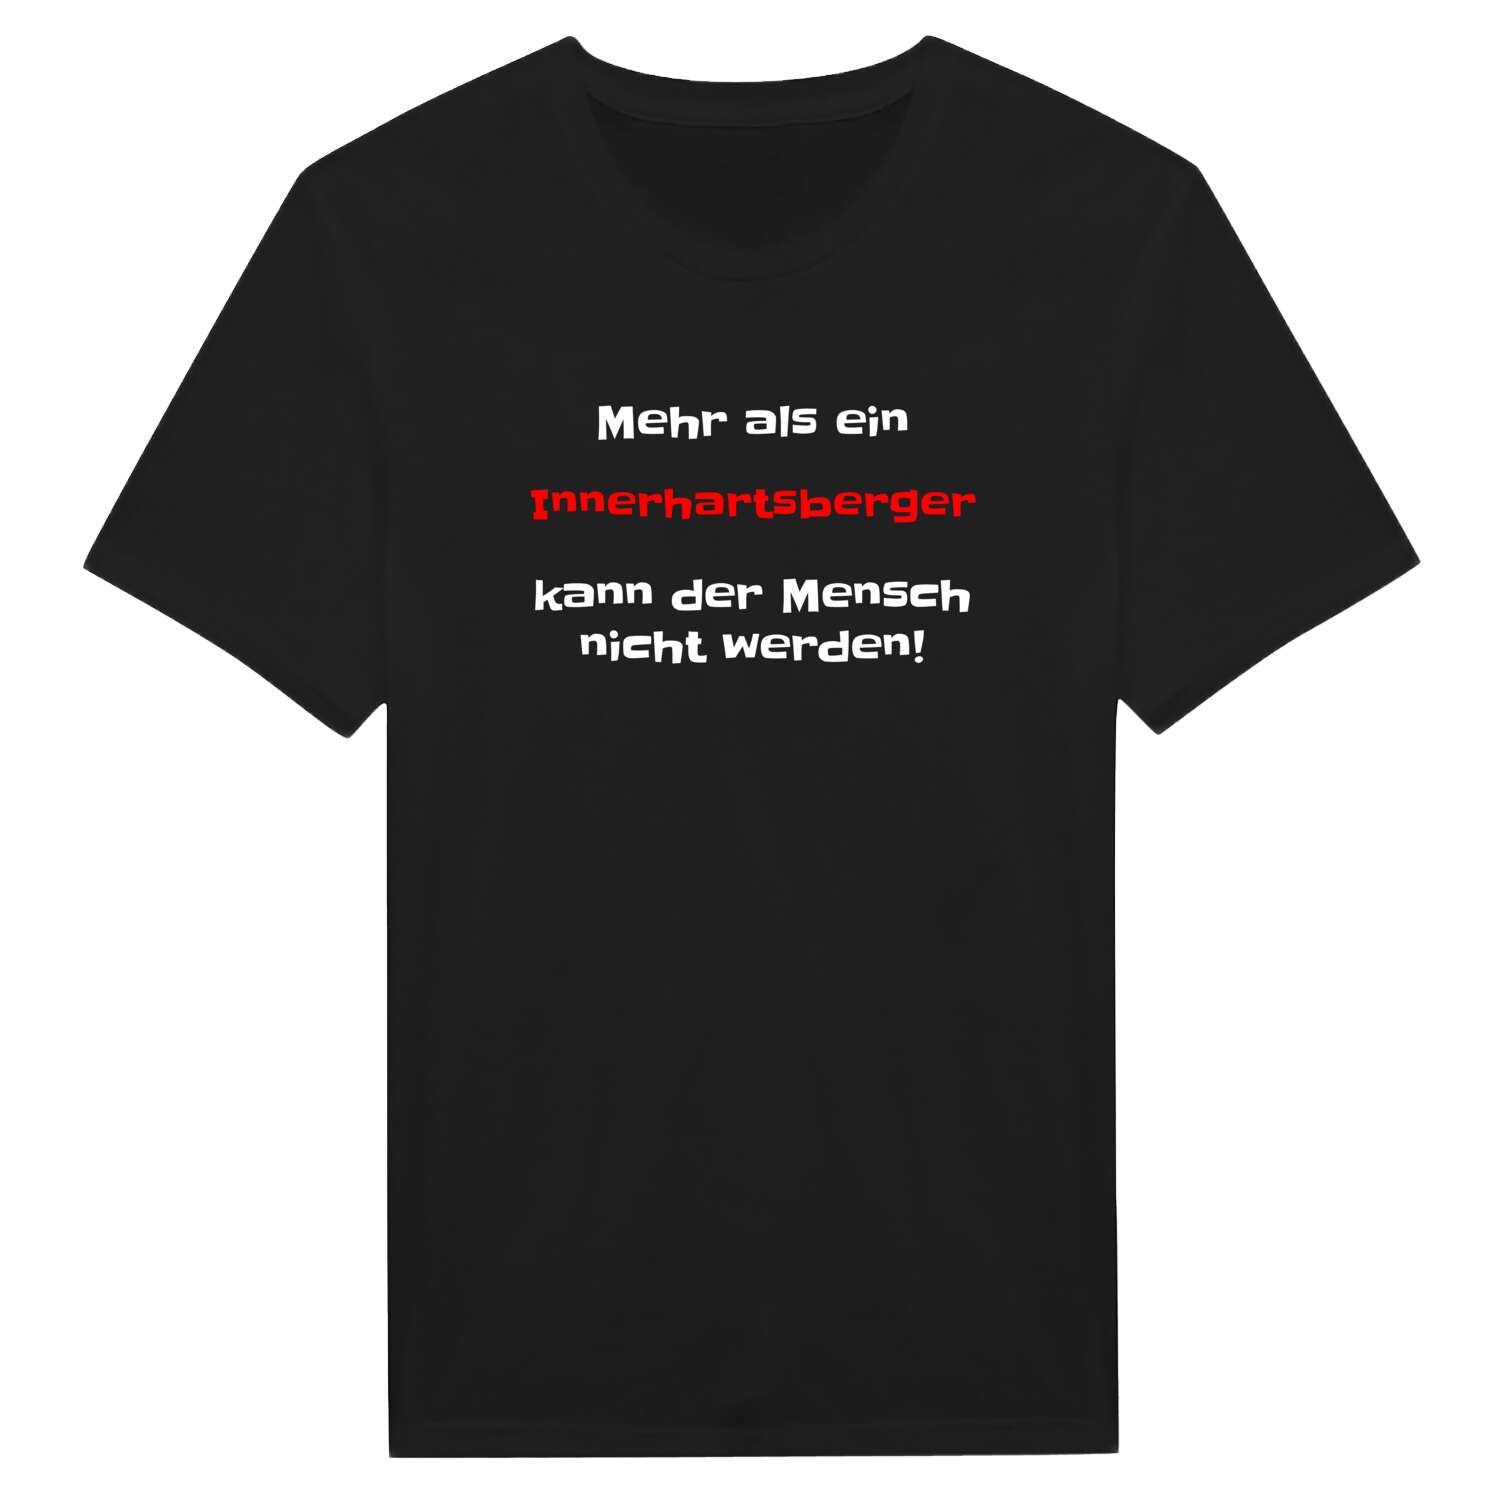 Innerhartsberg T-Shirt »Mehr als ein«